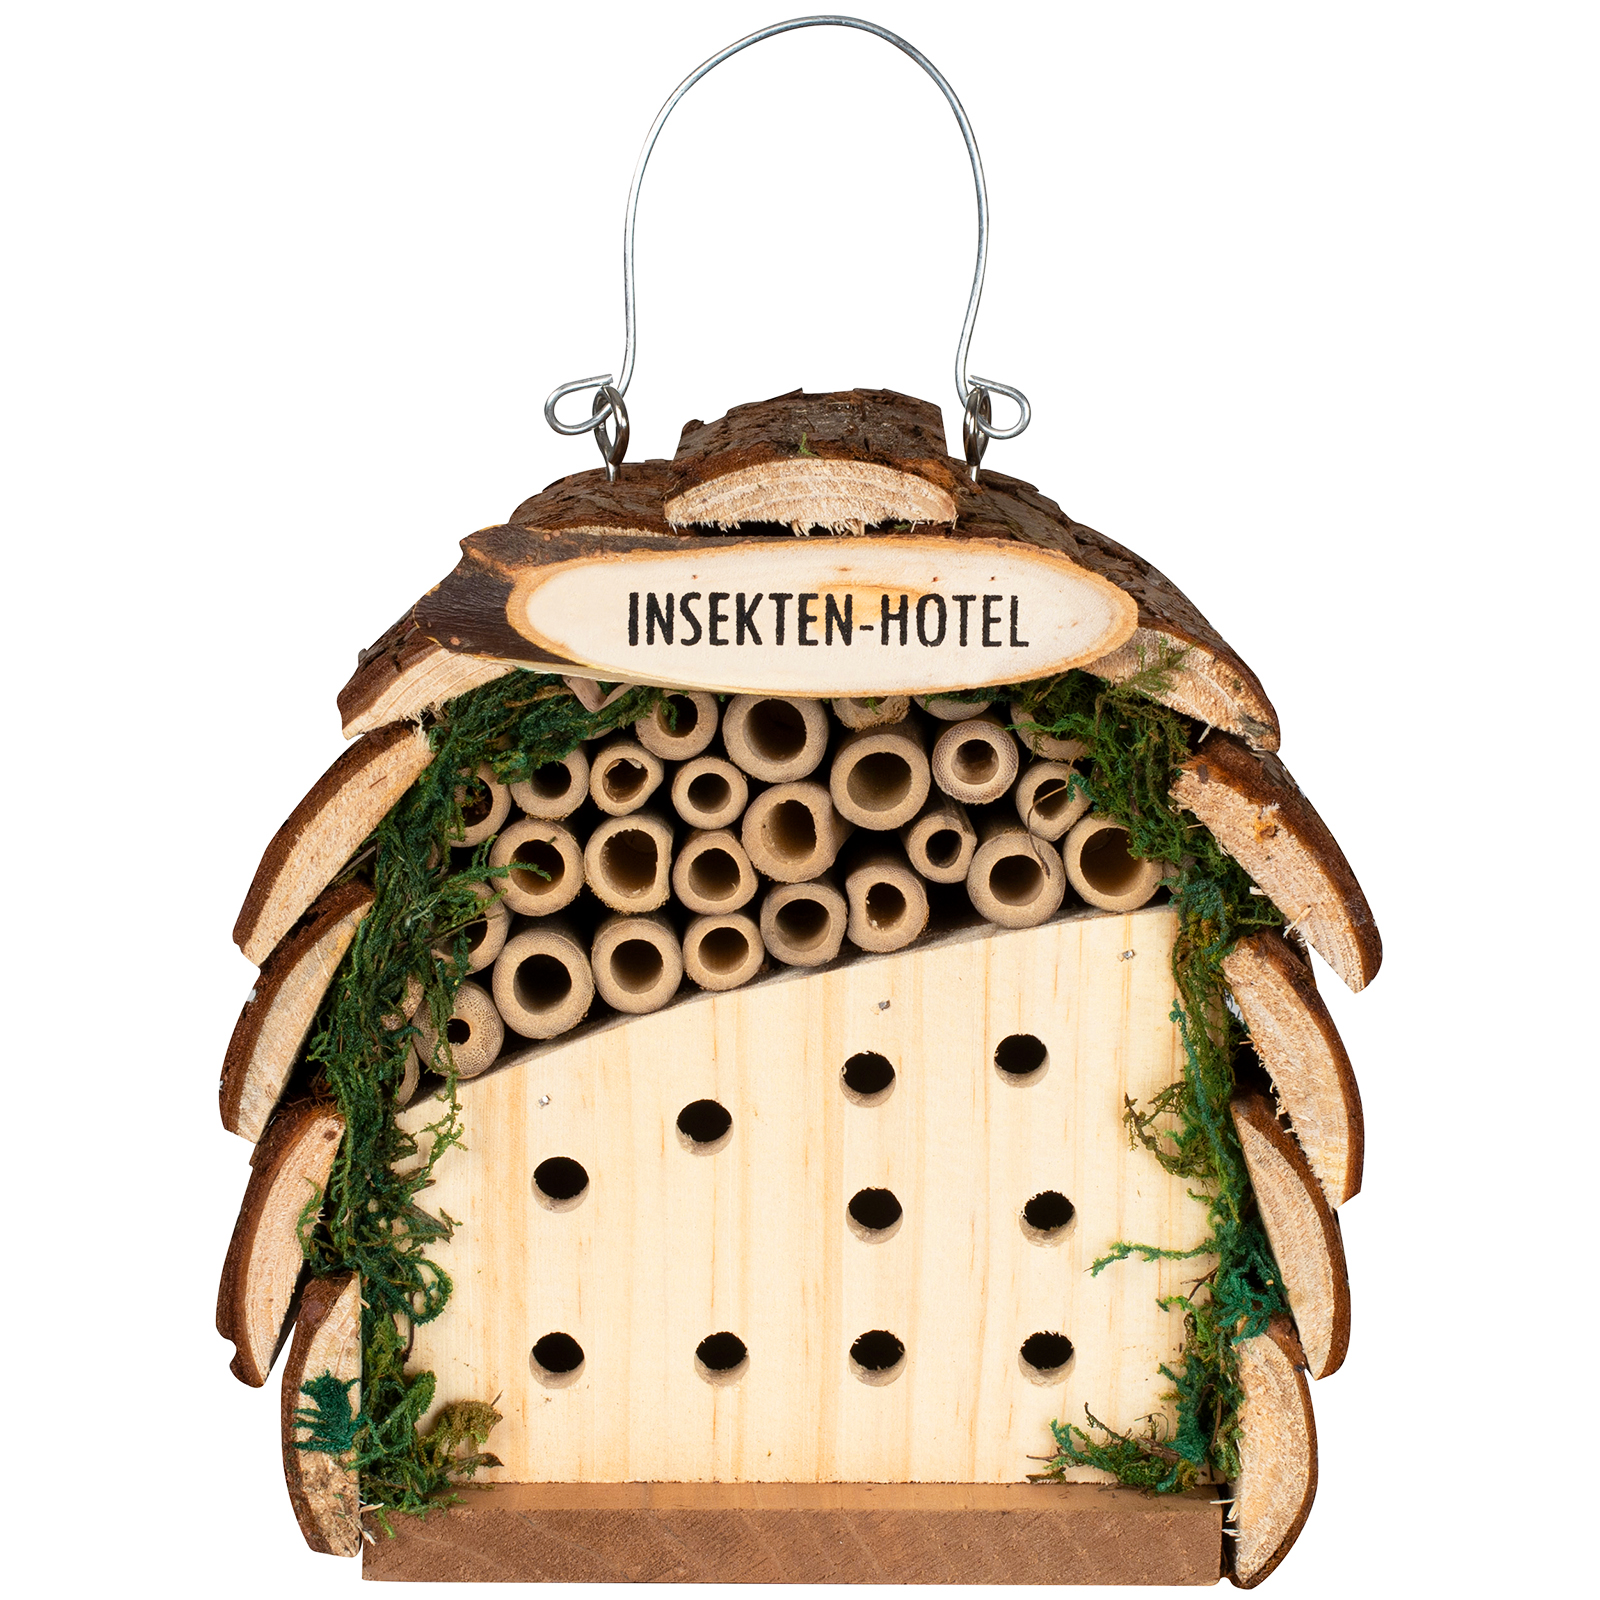 Gardigo Holzschnitzel 1kg Nachfüllpack für Insektenhotels Bienenhaus Nistkasten 